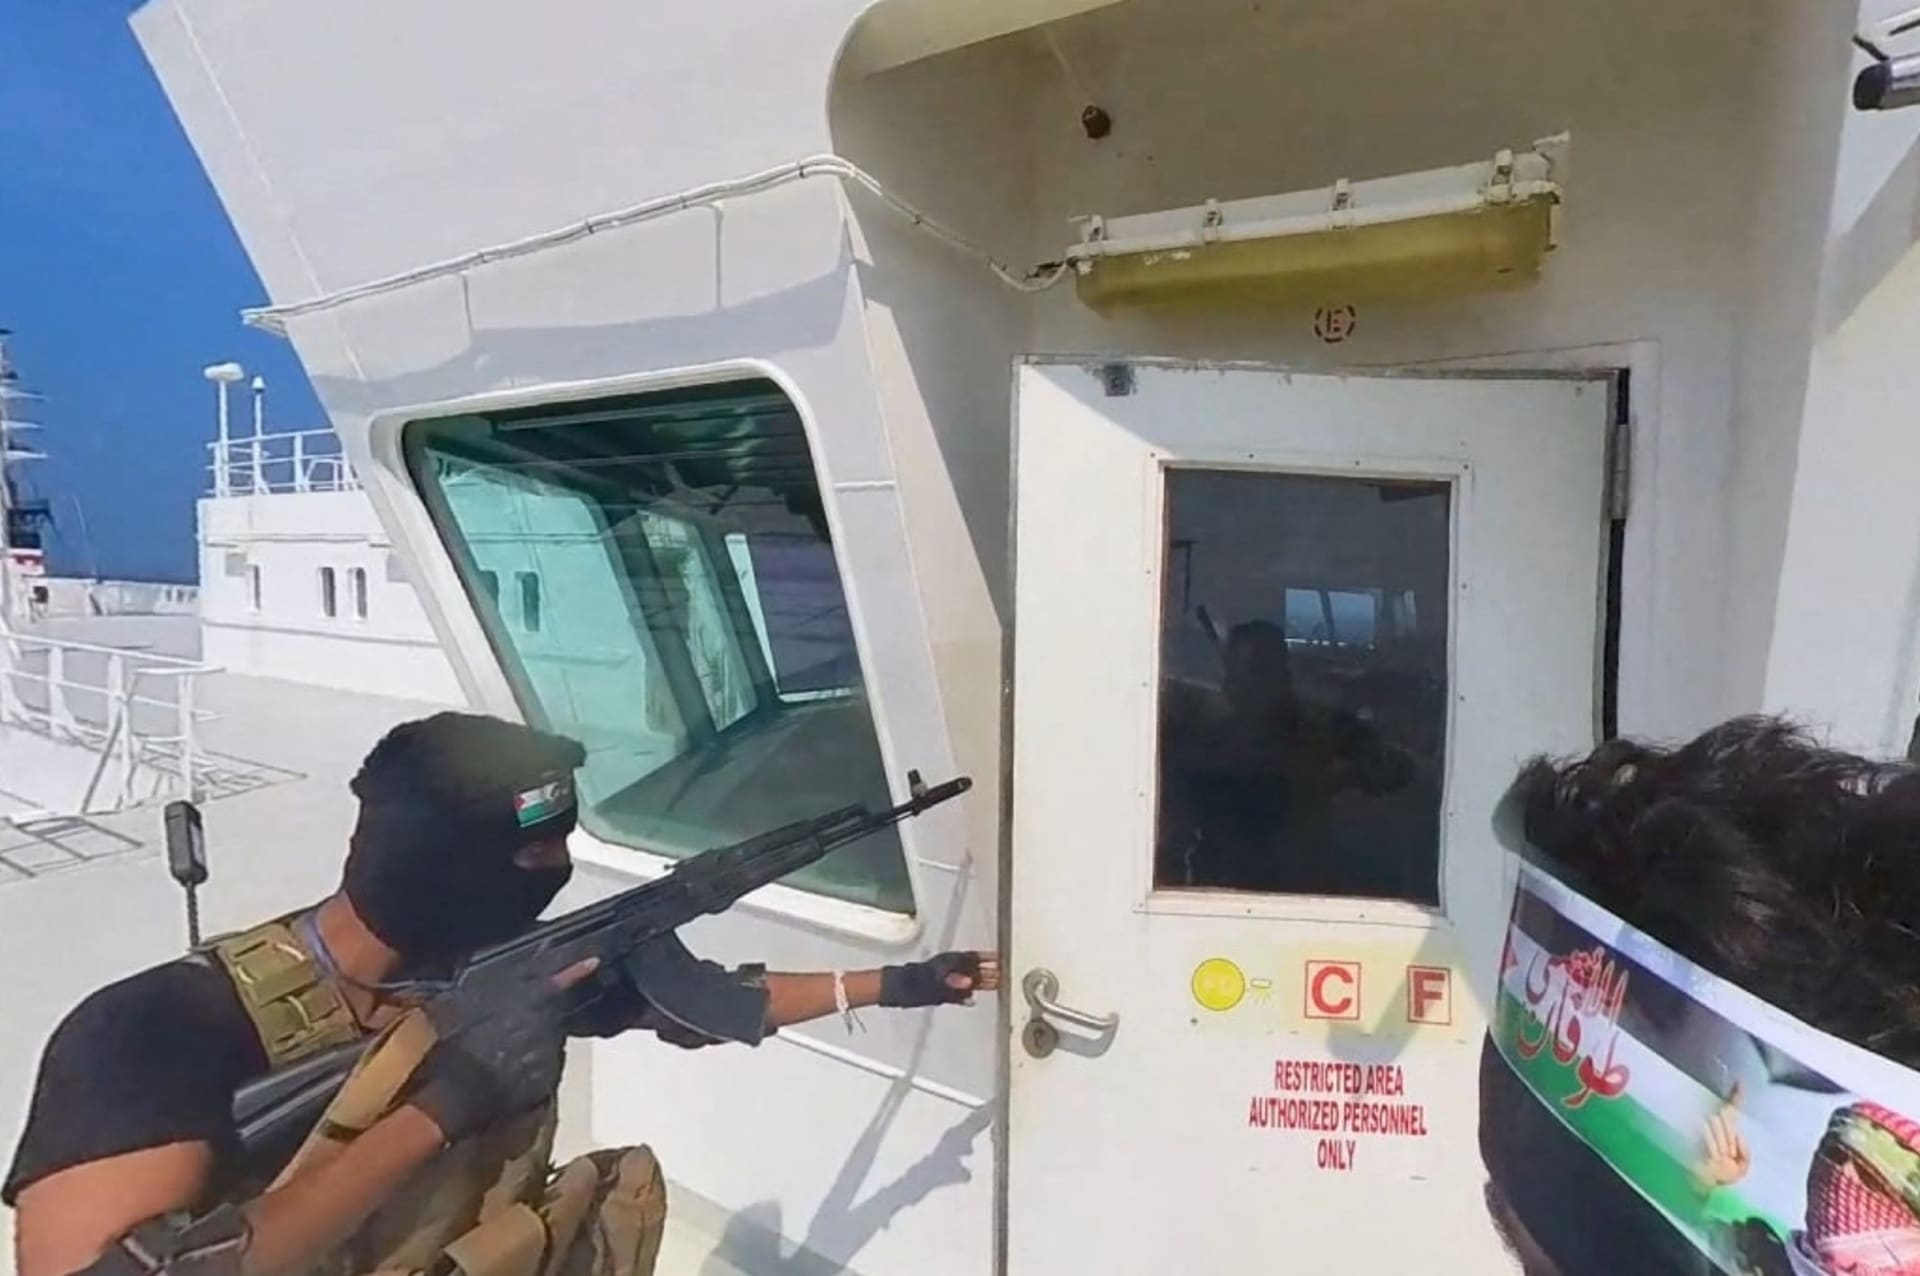 Hútíjský terorista se chystá vstoupit na můstek lodi